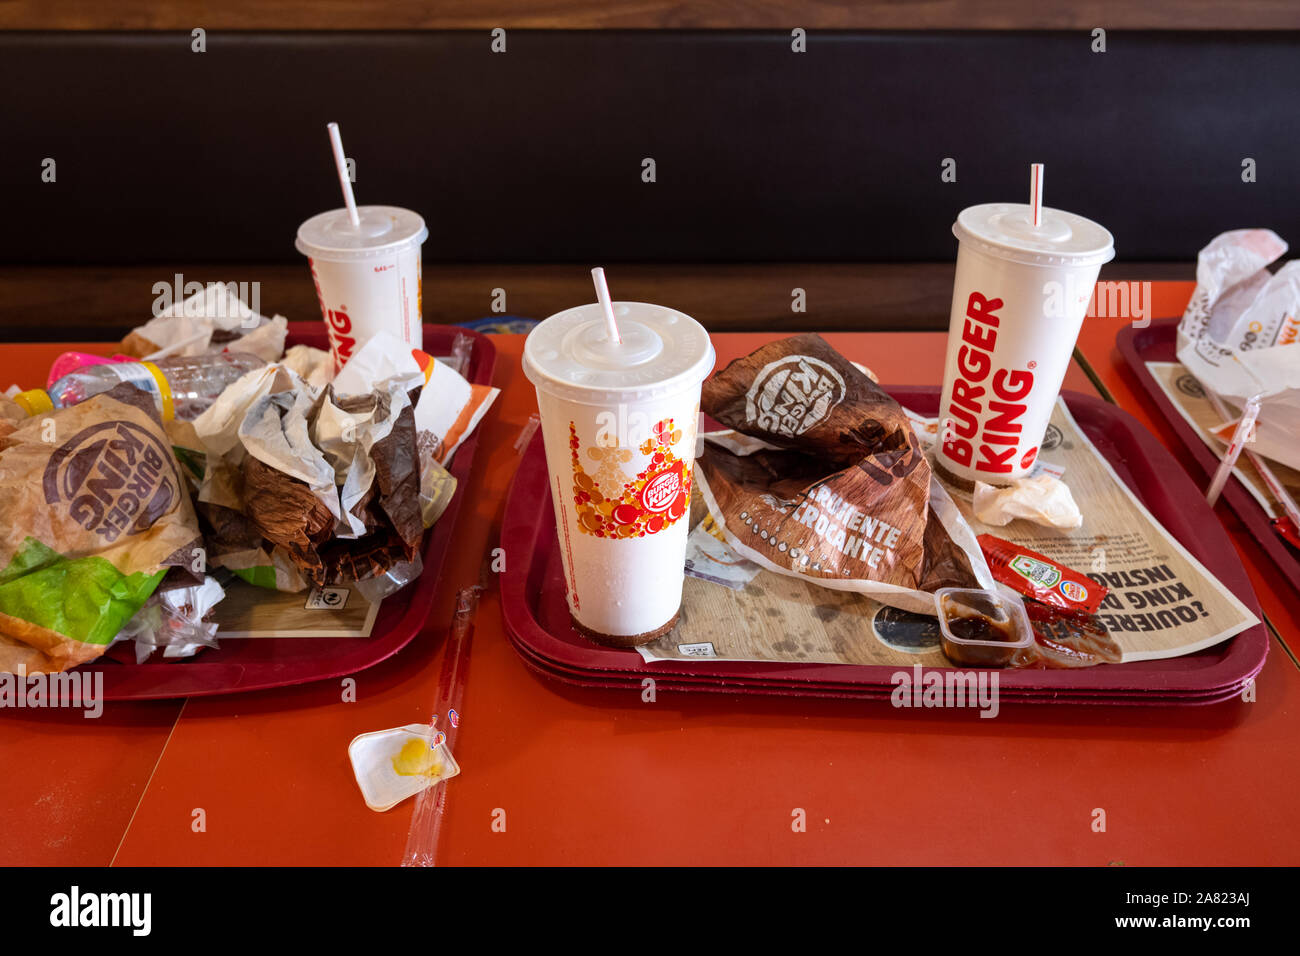 Valencia, Spagna - 1 Novembre 2019: Burger King ristorante i rifiuti che non vengono riciclati. Foto Stock